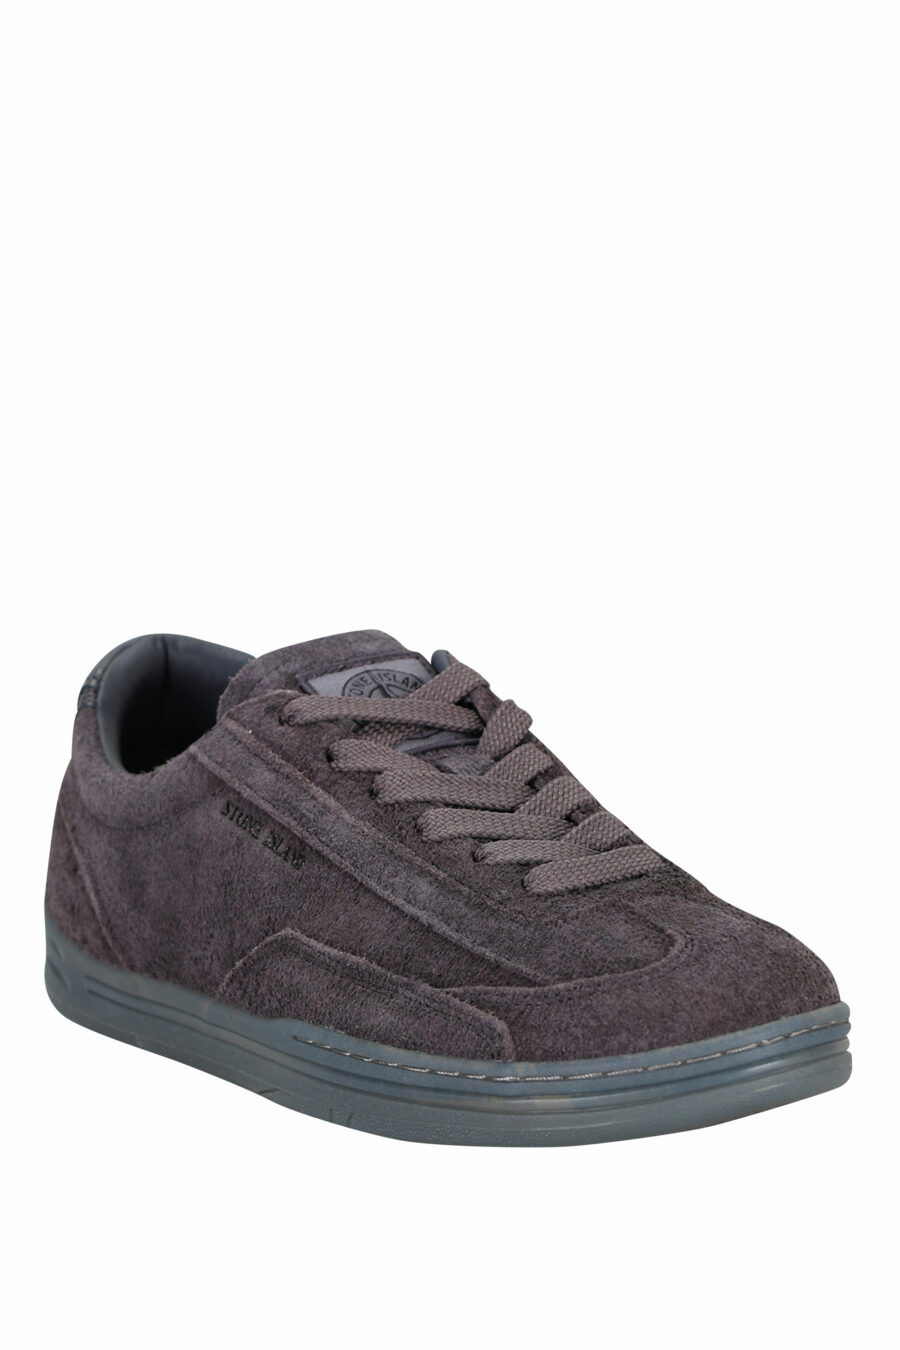 Zapatillas azul grisáceo con minilogo y suela gris - 8052572937910 1